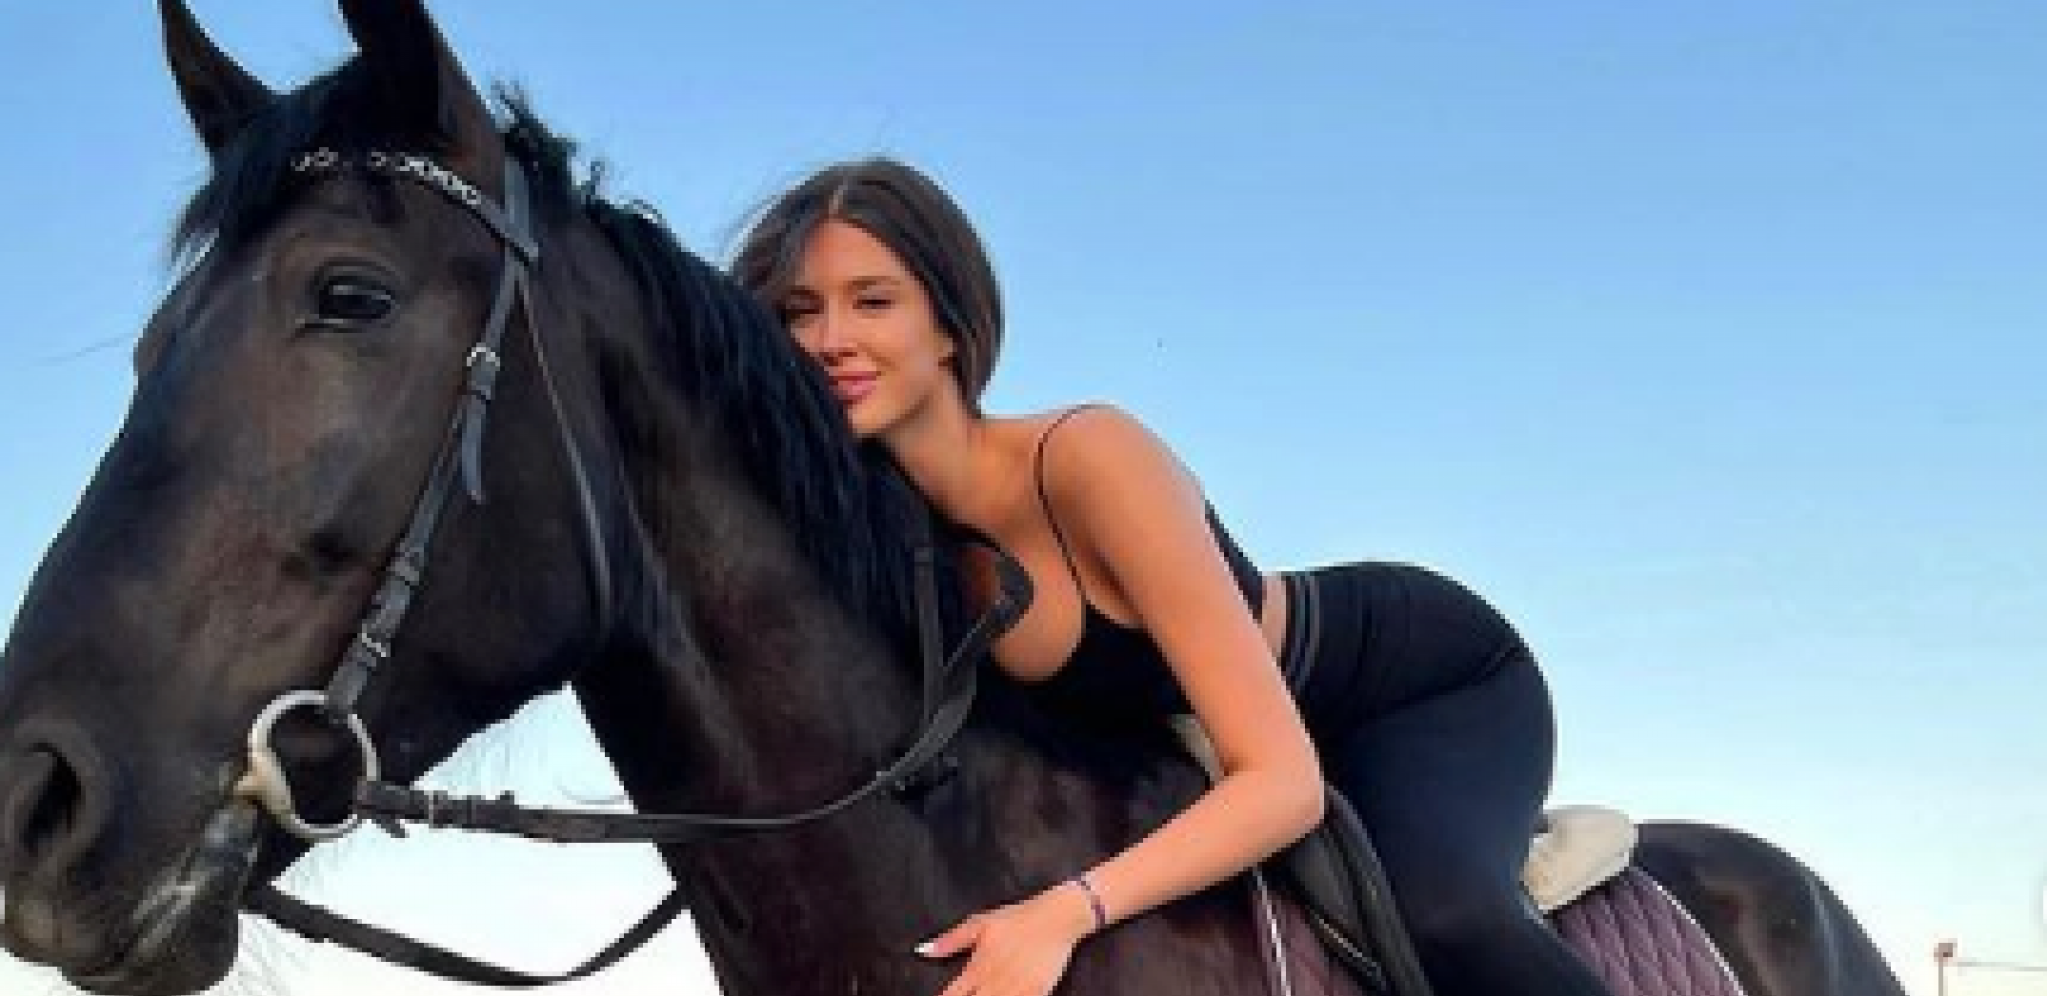 POKAZALA BUJNI DEKOLTE Ćerka Haris Džinovića u vrelom izdanju jahala konja, komentari ne prestaju da se nižu (FOTO)